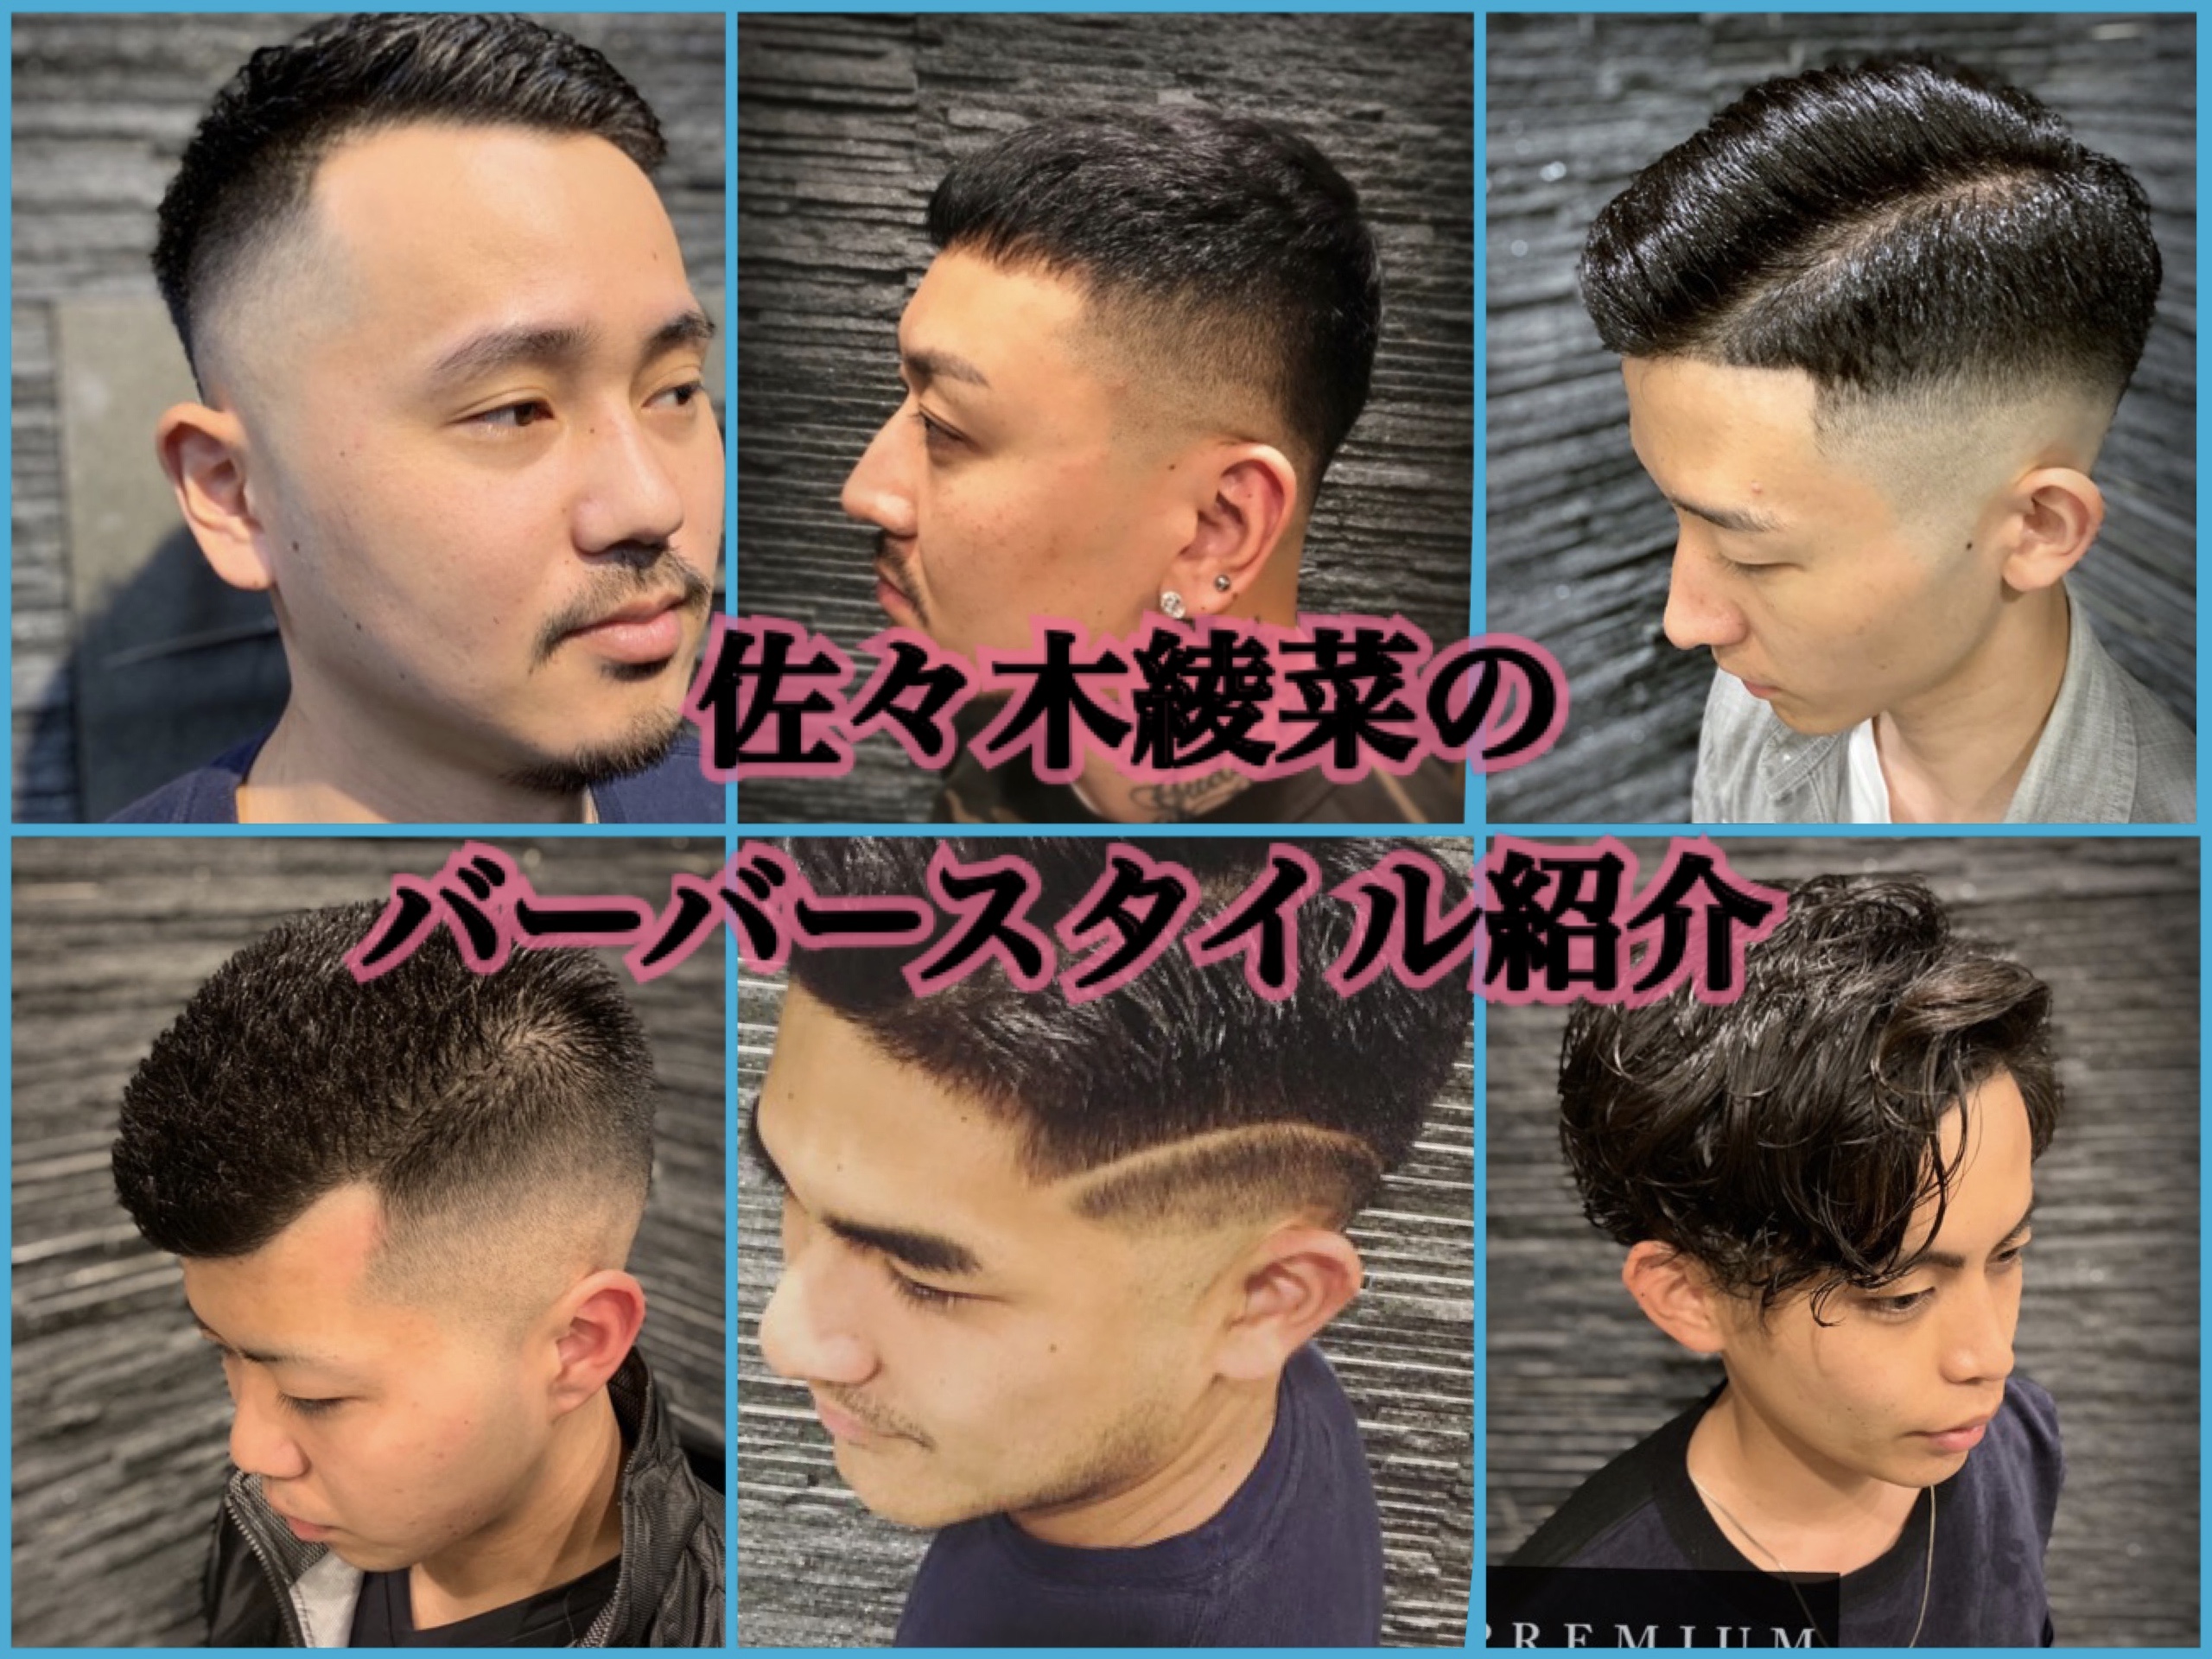 パーマオンロングヘアー ブログ 渋谷原宿 高級理容室 床屋 ヘアサロン Premium Barber プレミアムバーバー